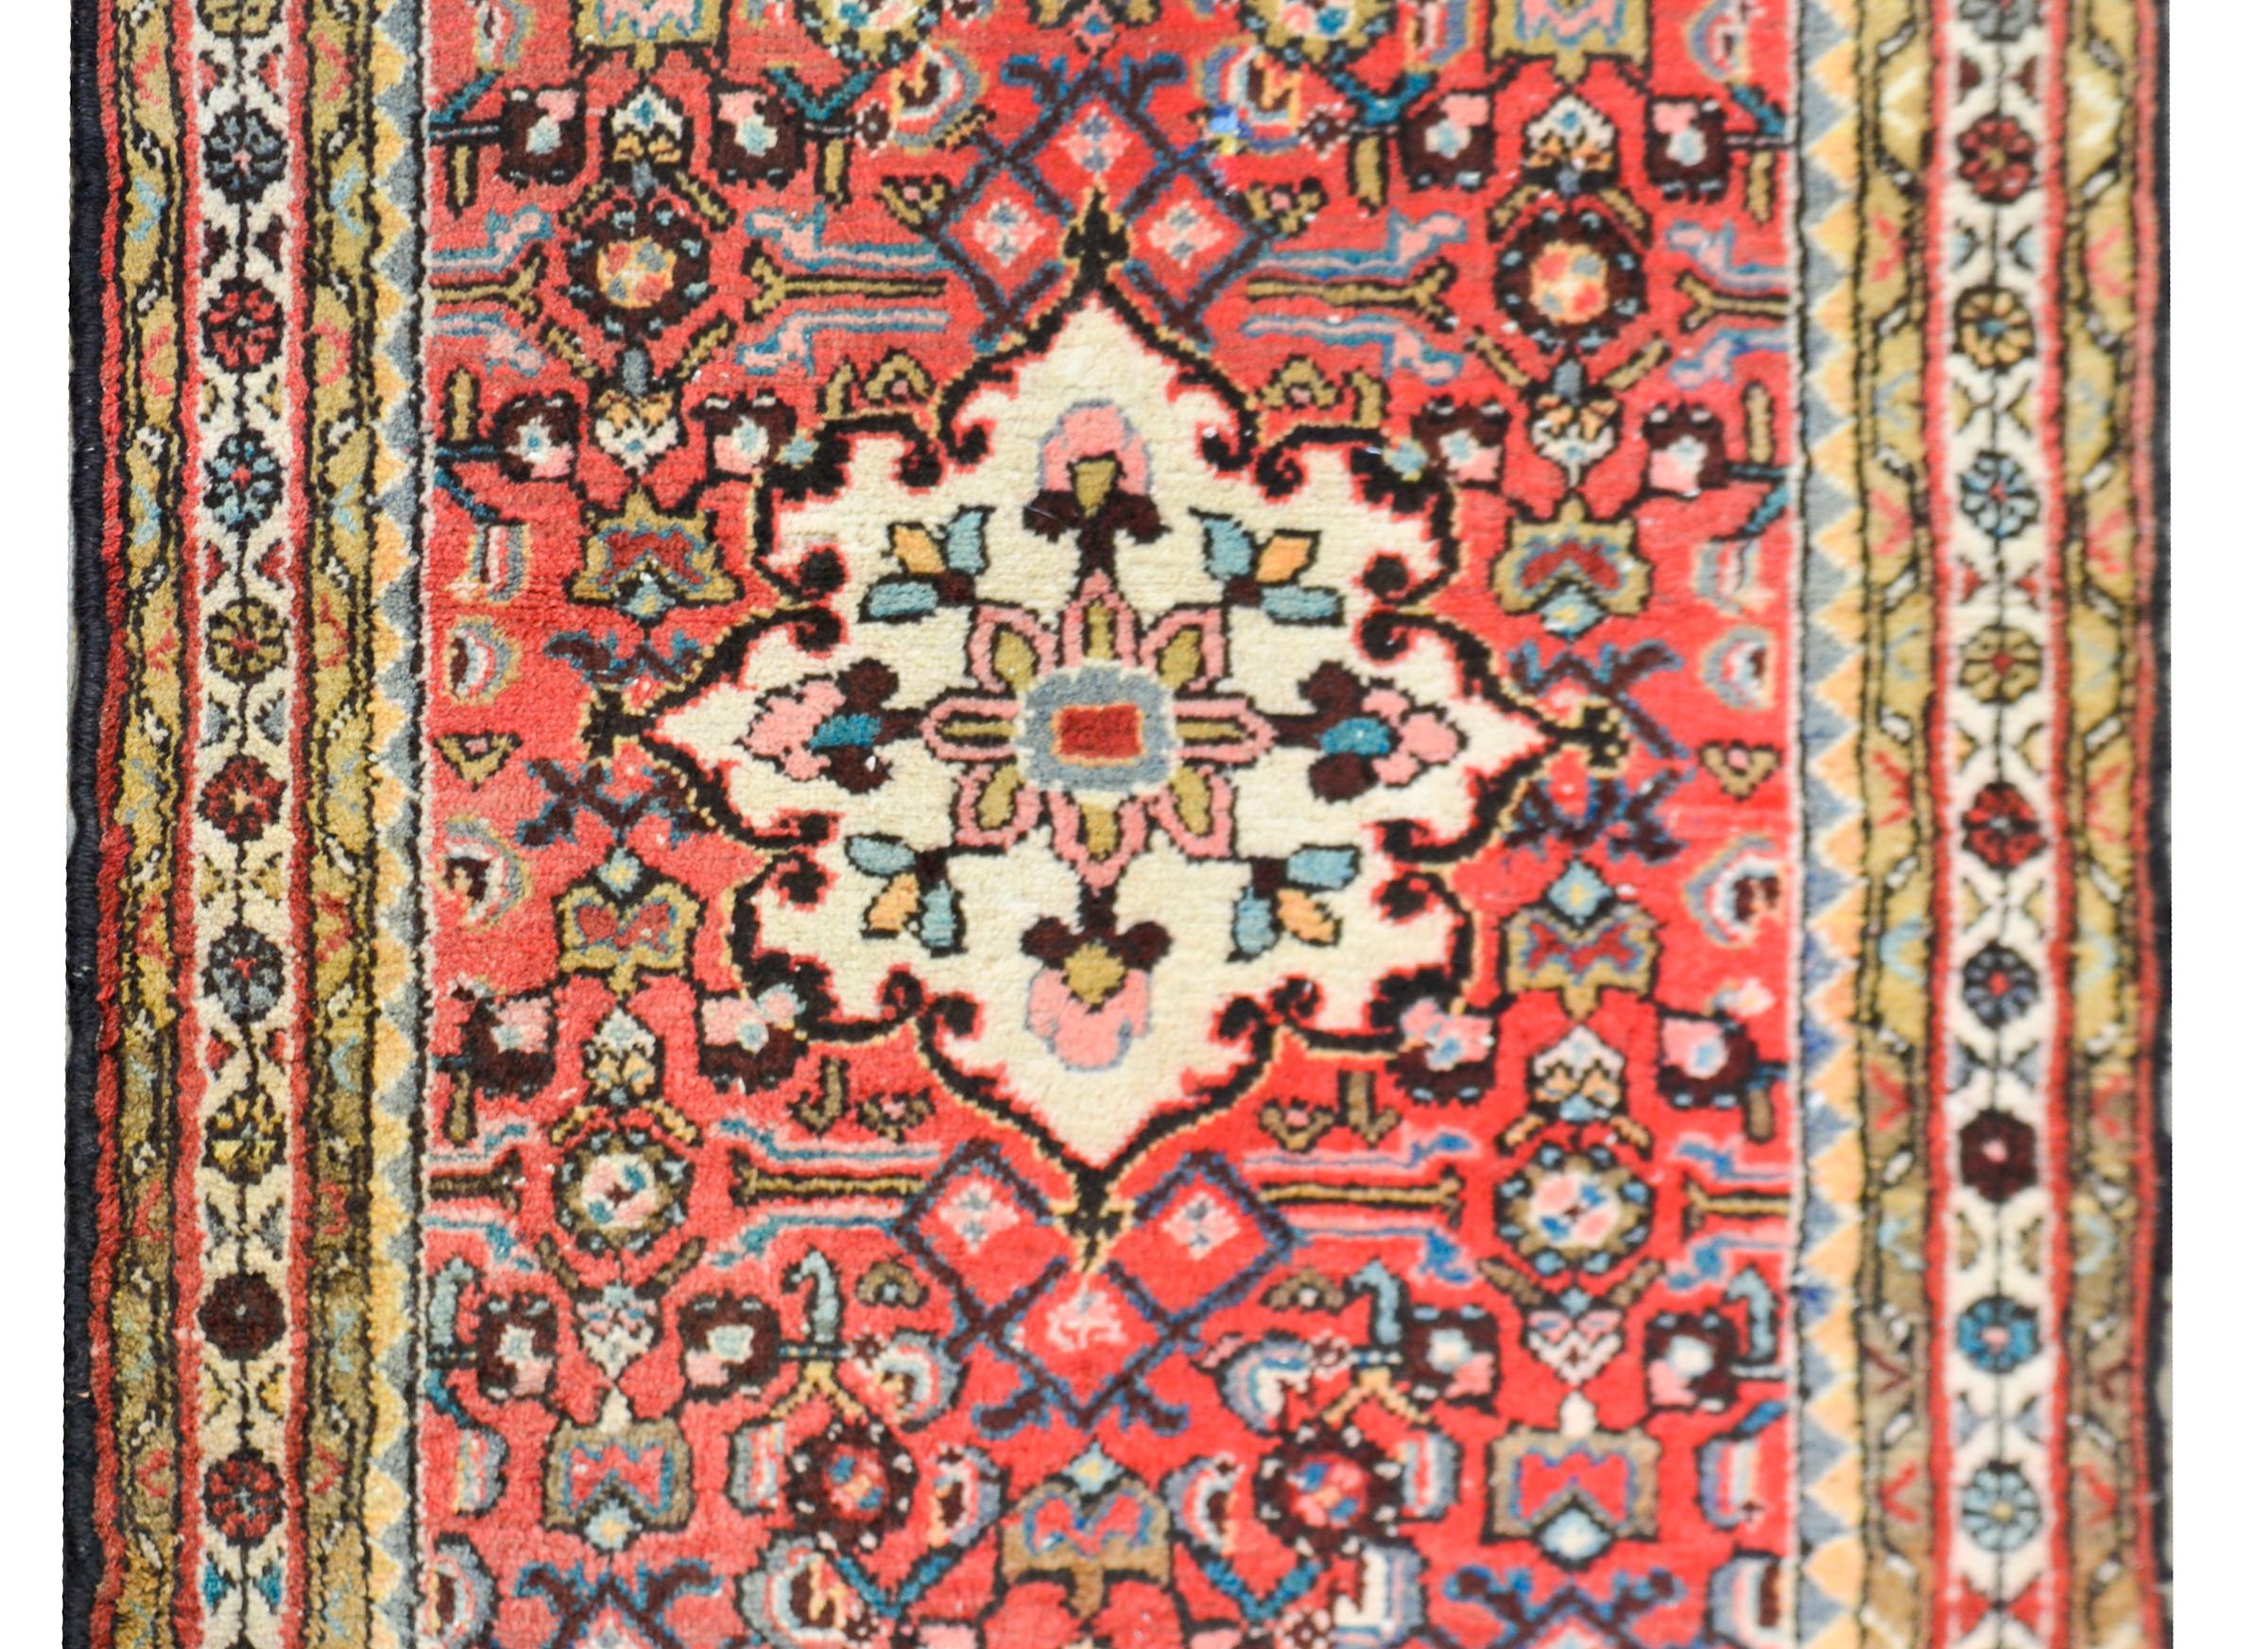 Ein süßer persischer Hamadan-Teppich aus dem 20. Jahrhundert mit einem floral gemusterten Medaillon vor einem Hintergrund mit Ranken und stilisierten Blumen, umgeben von mehreren zierlichen floral gemusterten Streifen.